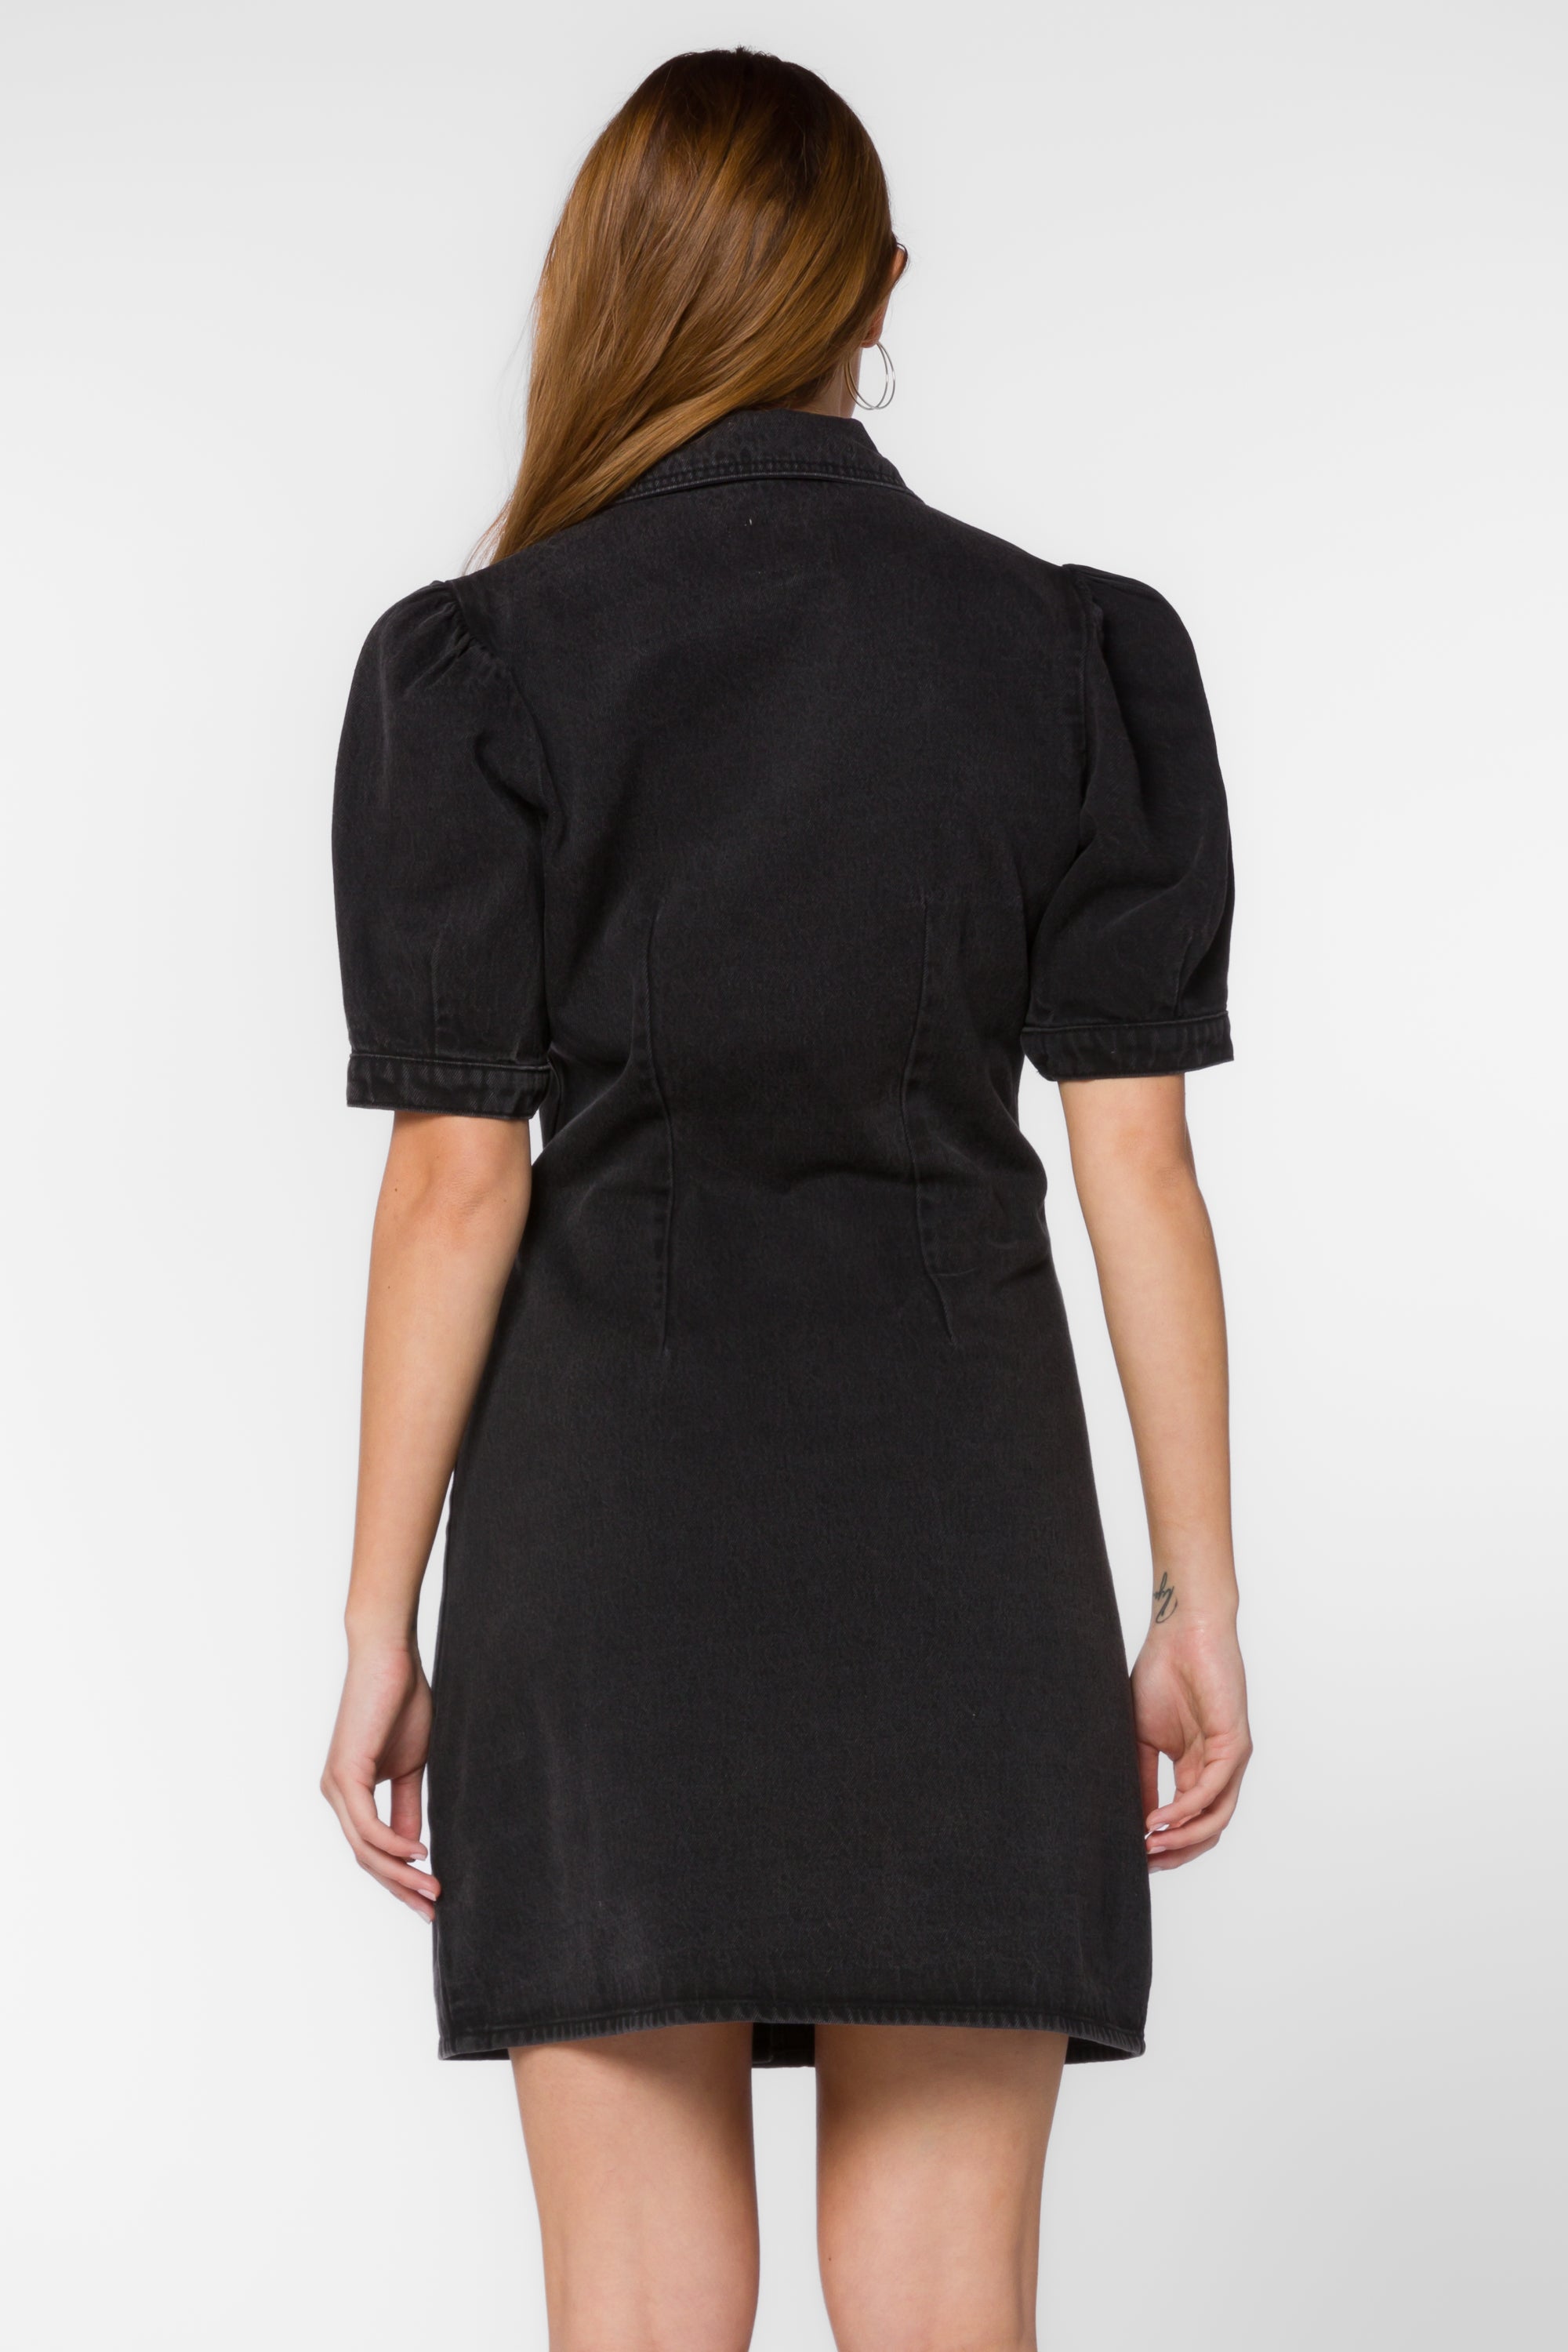 Romina Washed Black Dress - Dresses - Velvet Heart Clothing